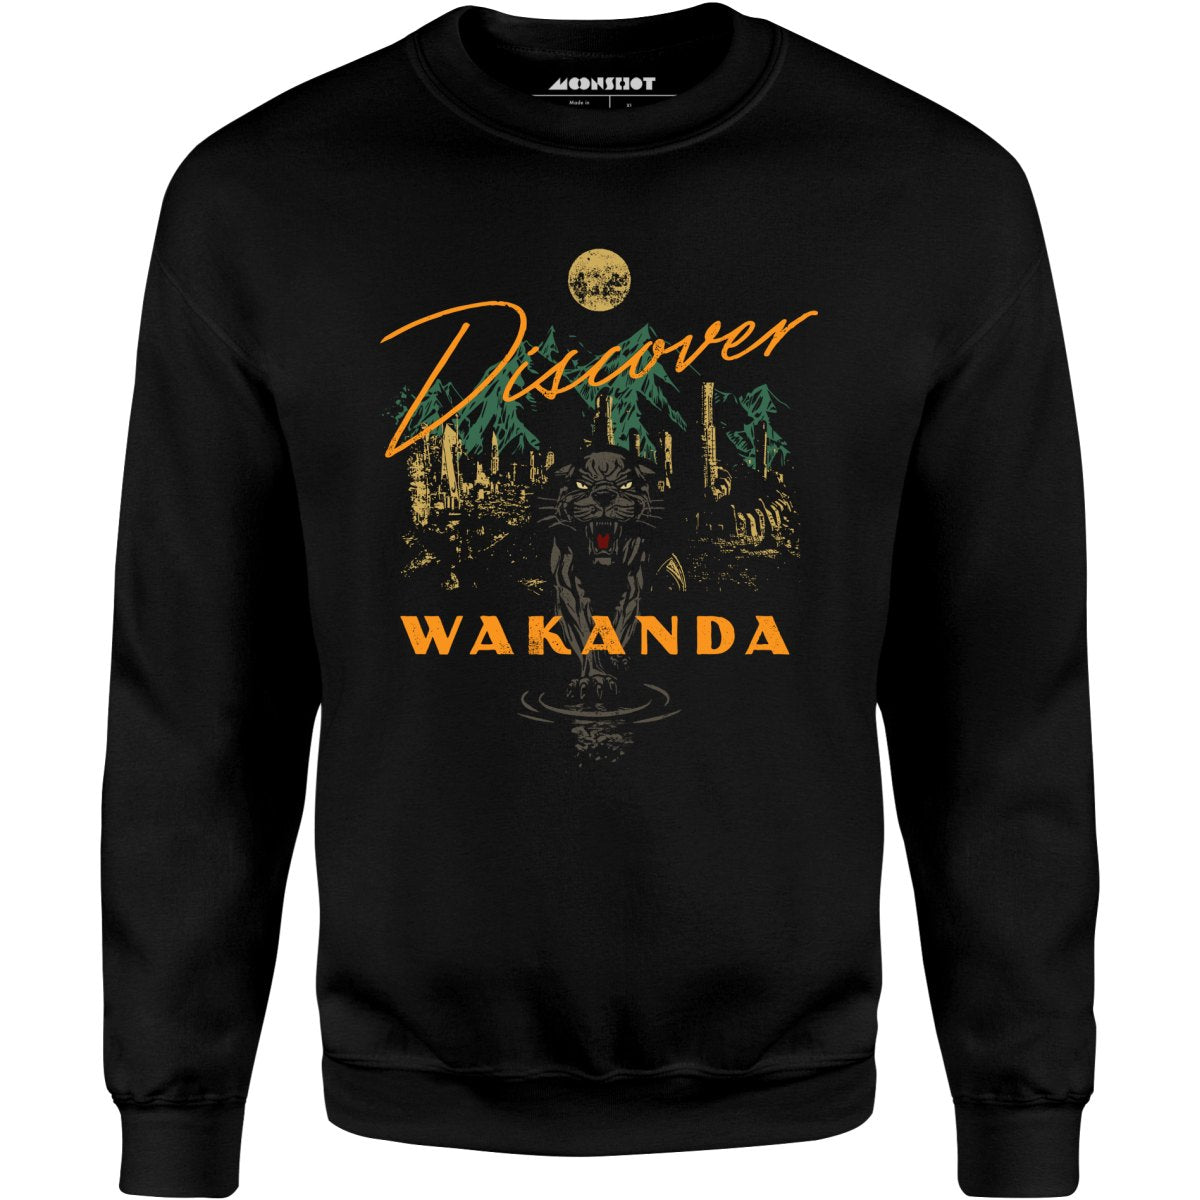 Discover Wakanda - Unisex Sweatshirt